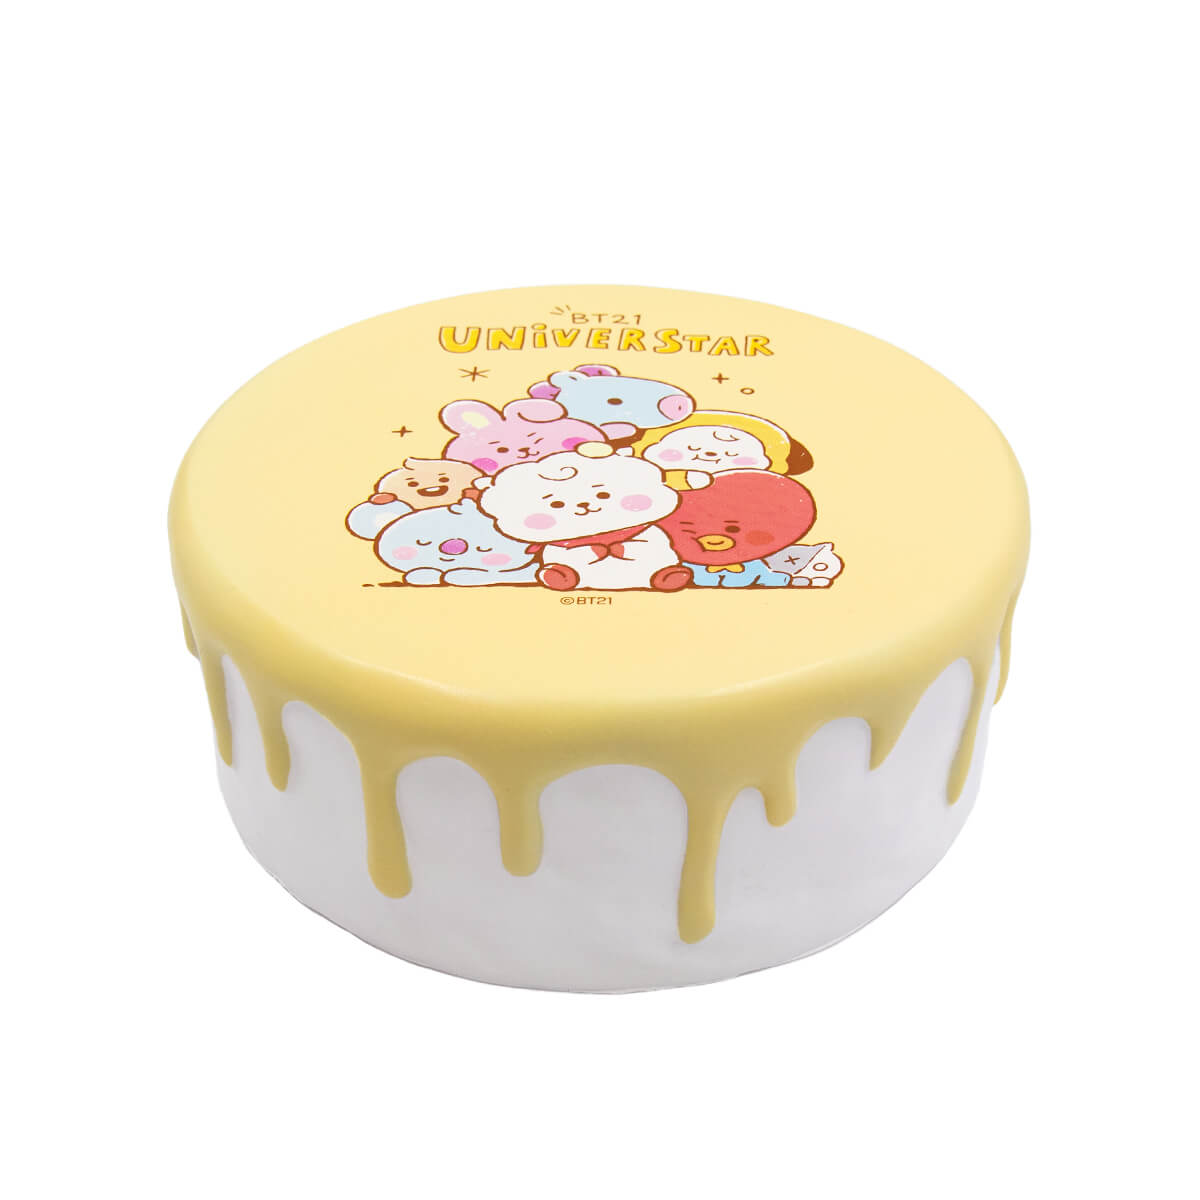 Jumbo Squishys Platinum Unicorn Cake Slow Rising Squeeze Scented Kid Toy  Gift UK | eBay